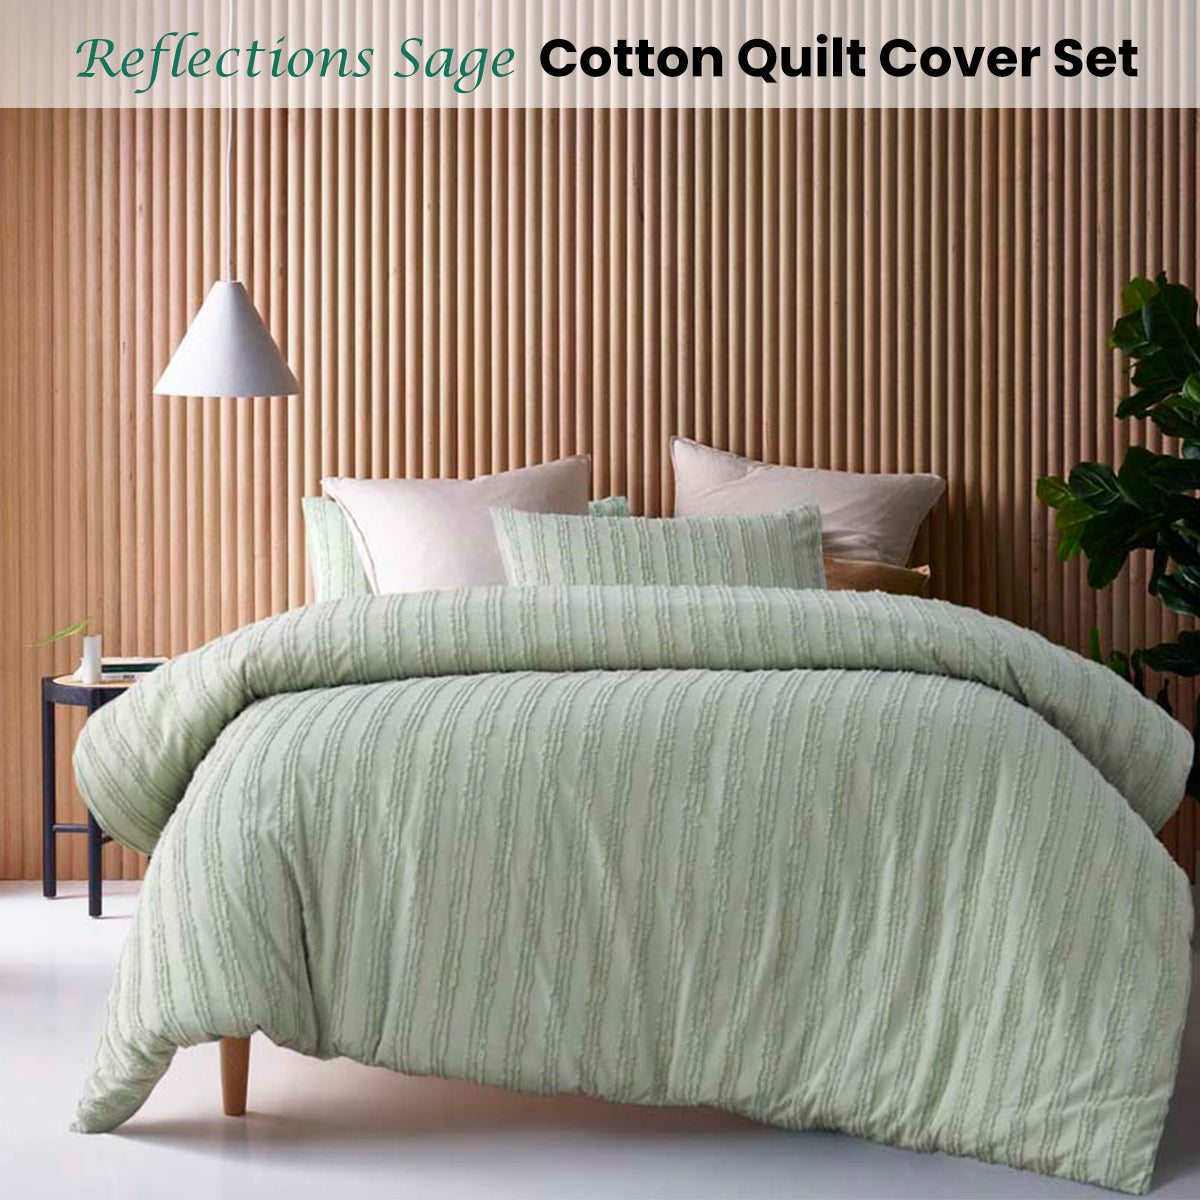 King Vintage Design Cotton Quilt Cover Set -  Sage